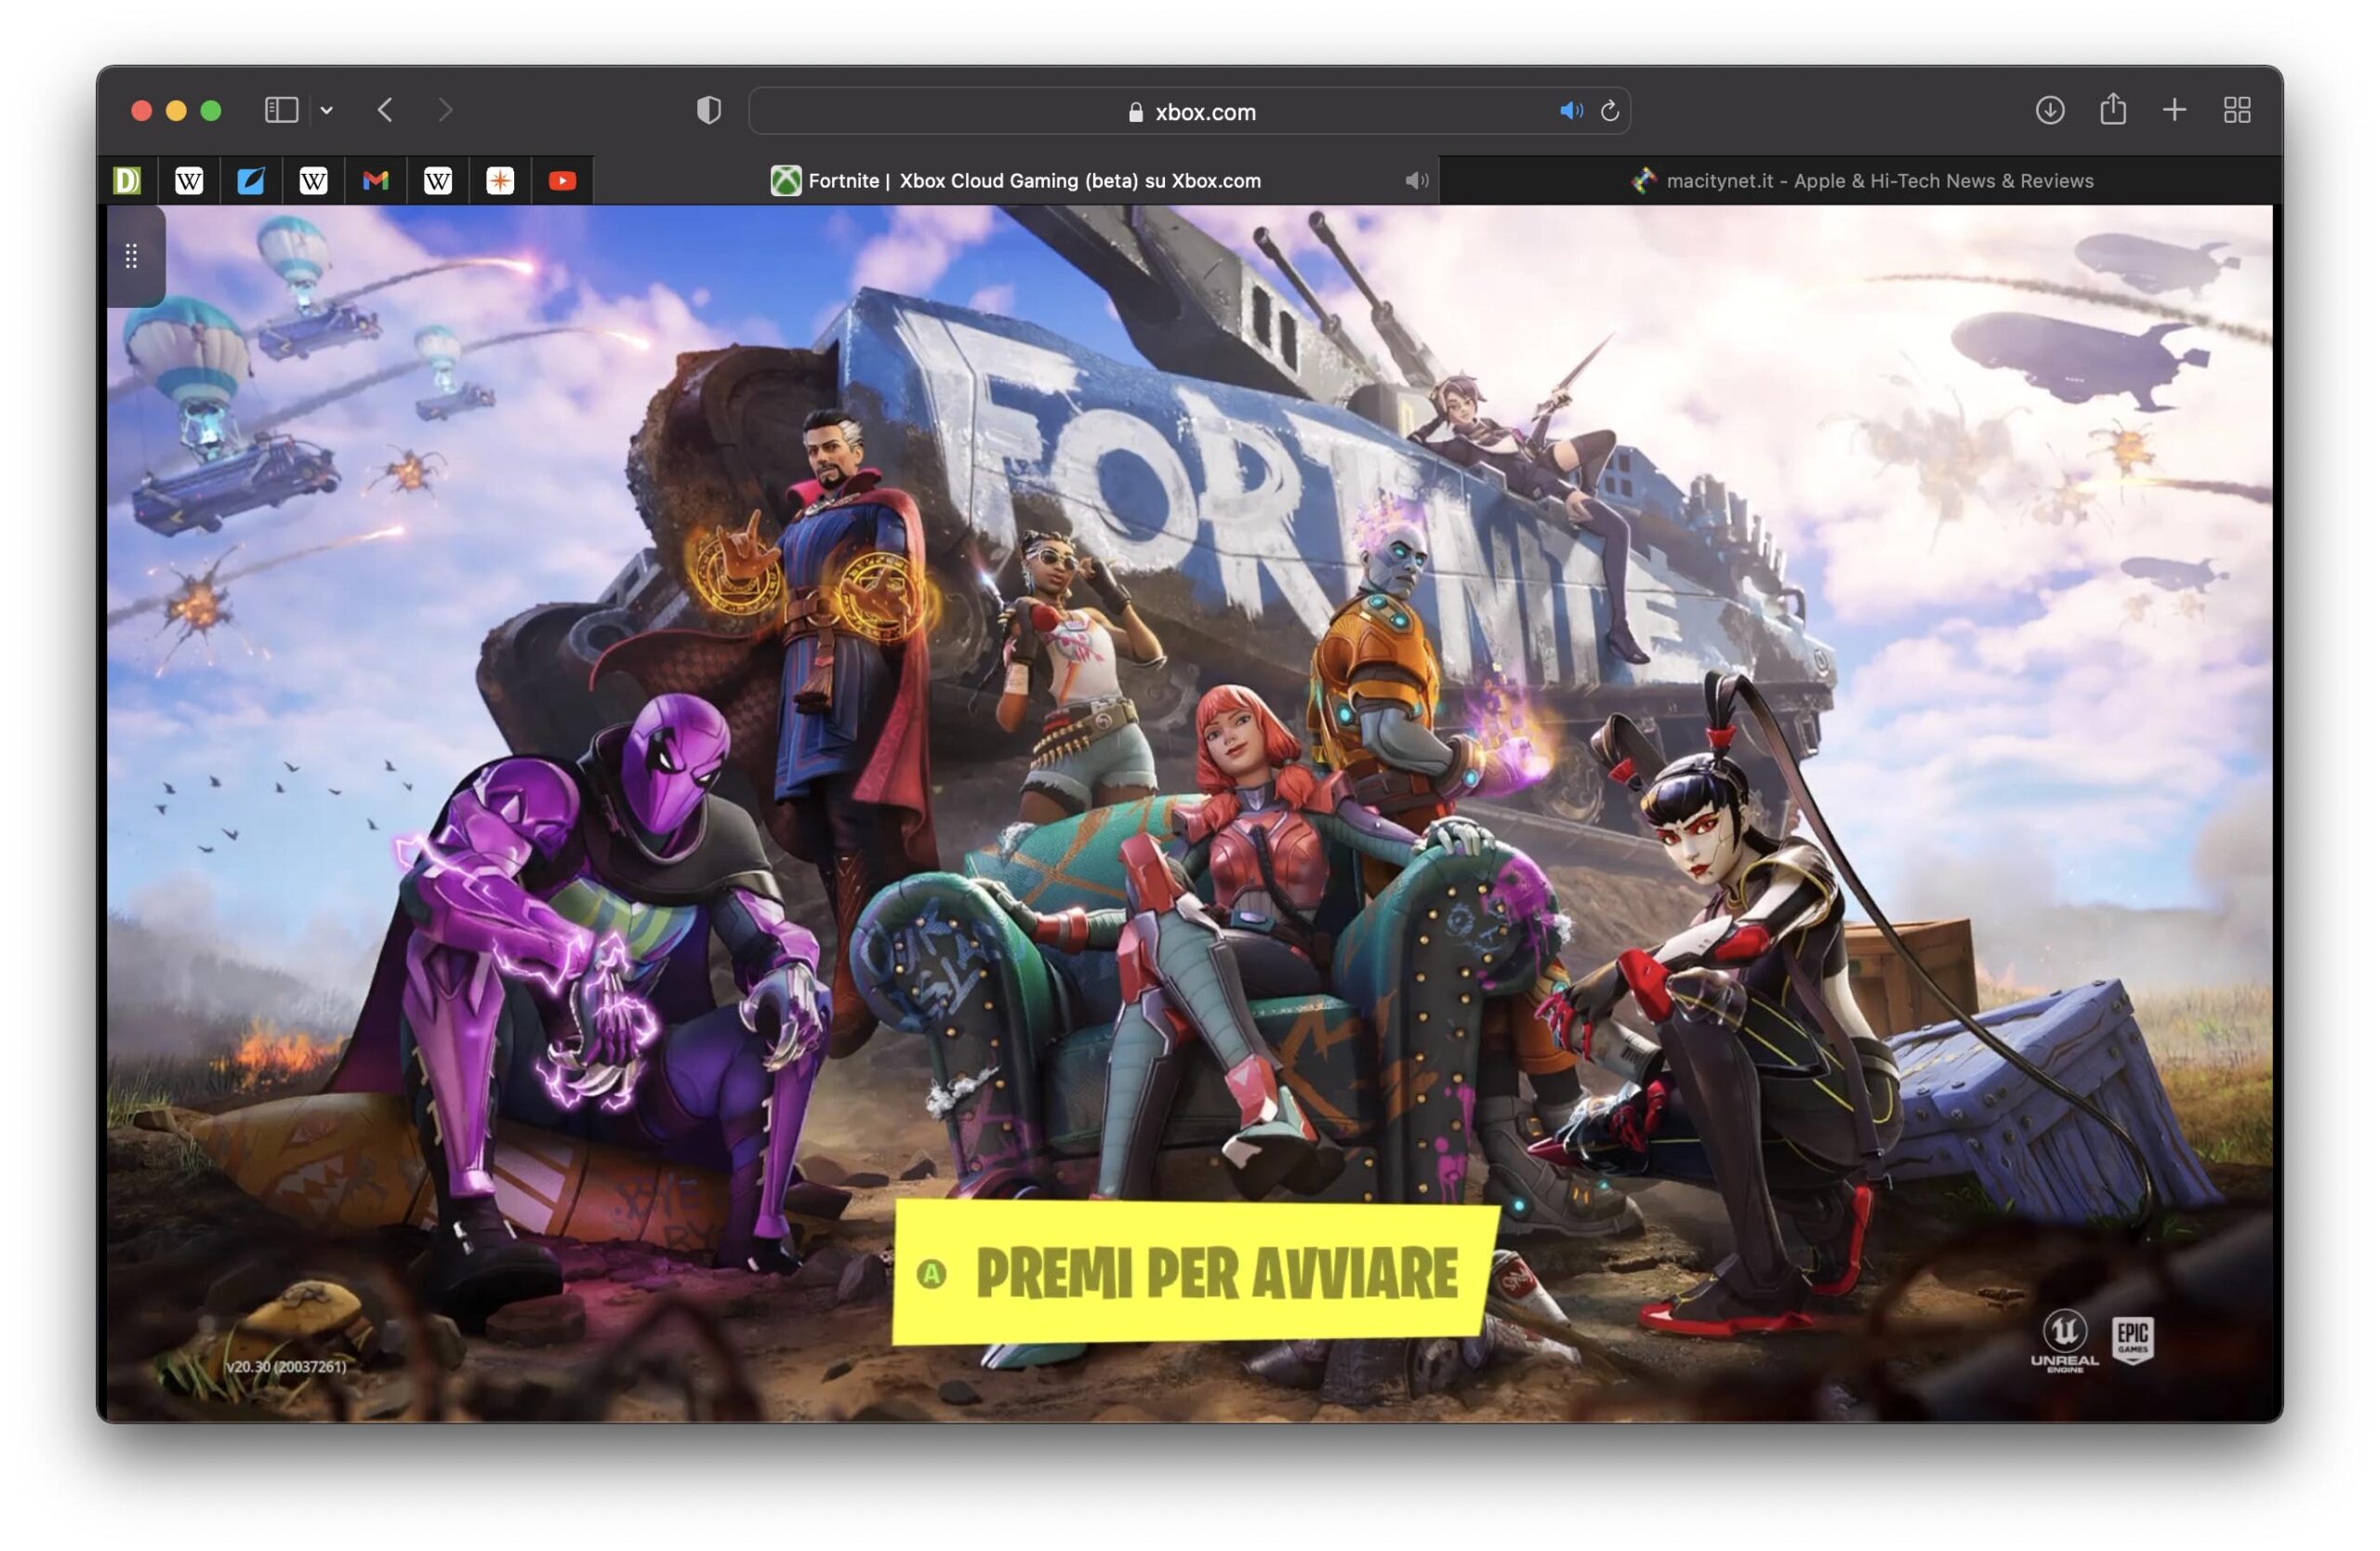 Fortnite chega grátis a iPhones e iPads pelo Xbox Cloud Gaming - MacMagazine